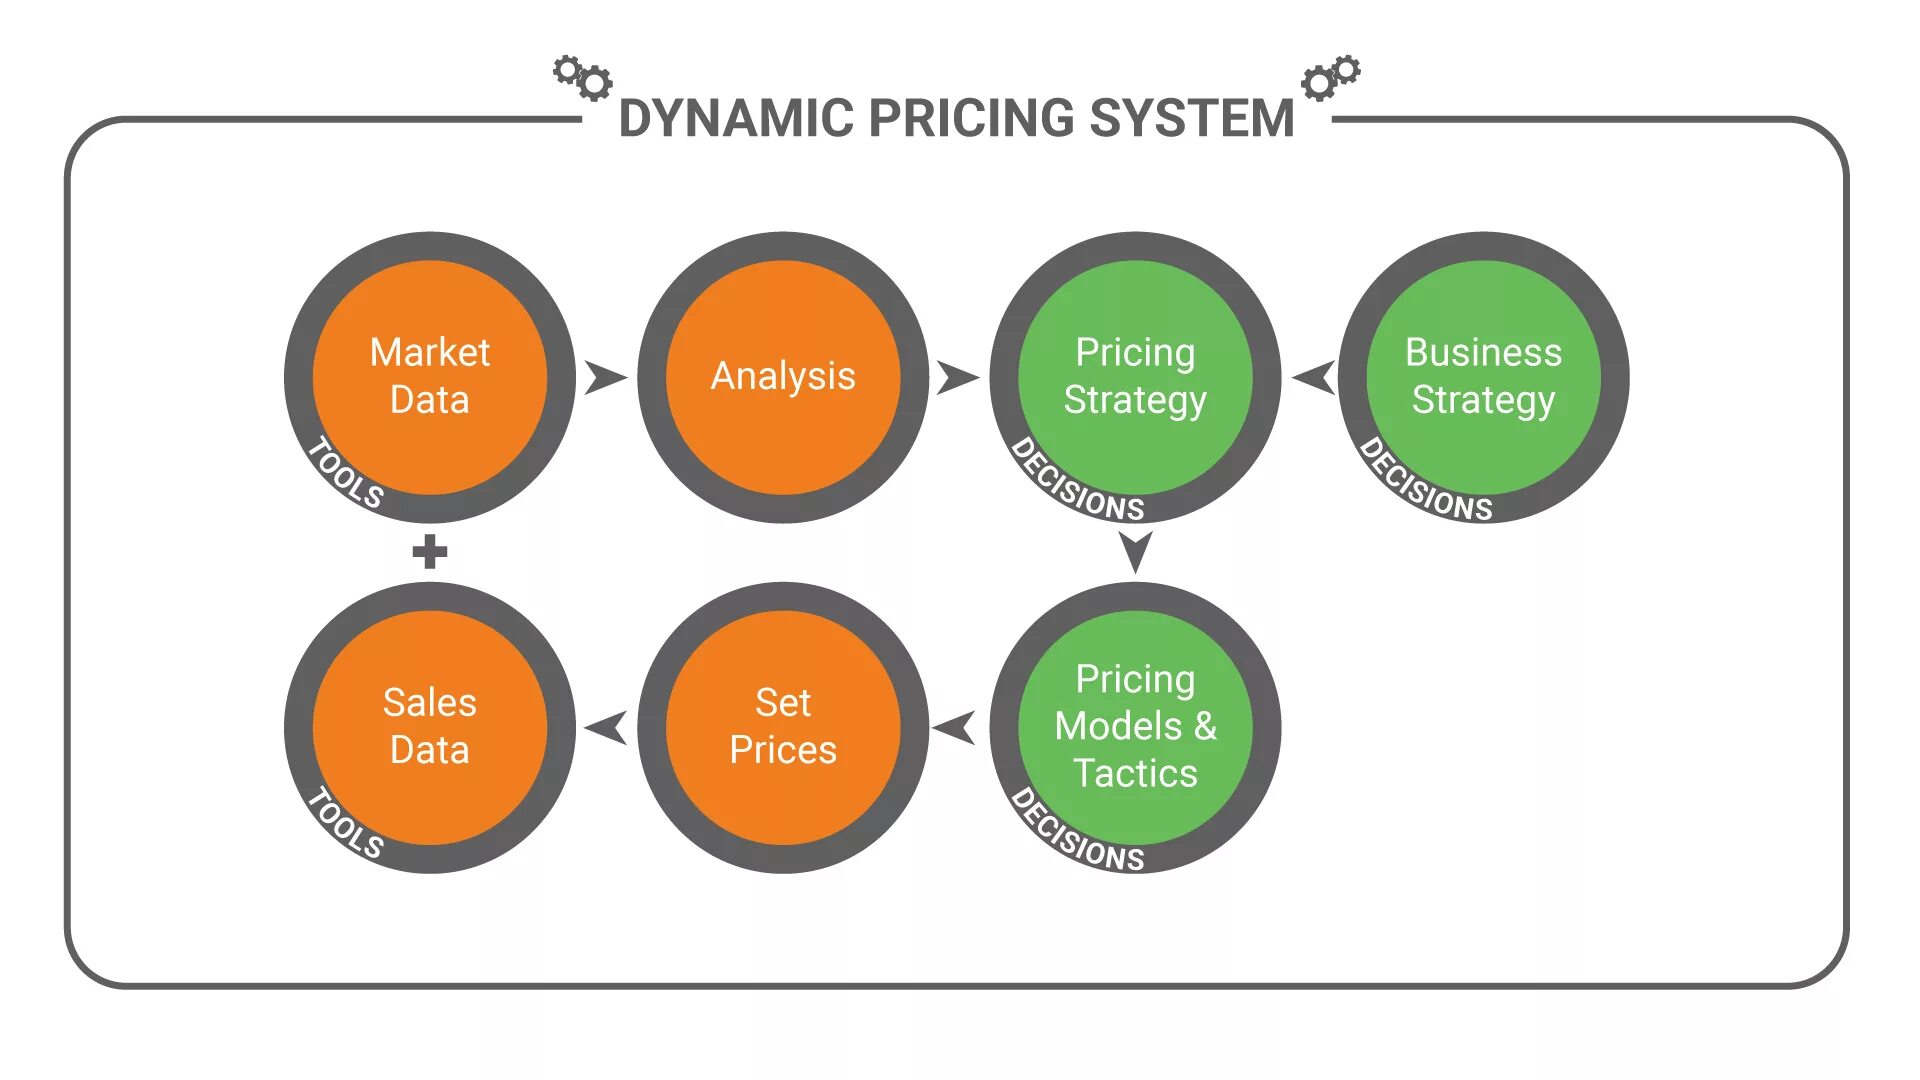 Dynamic pricing. Dynamic перевод. KVI позиции что это. Динамичное ценообразование в маркетплейсах.